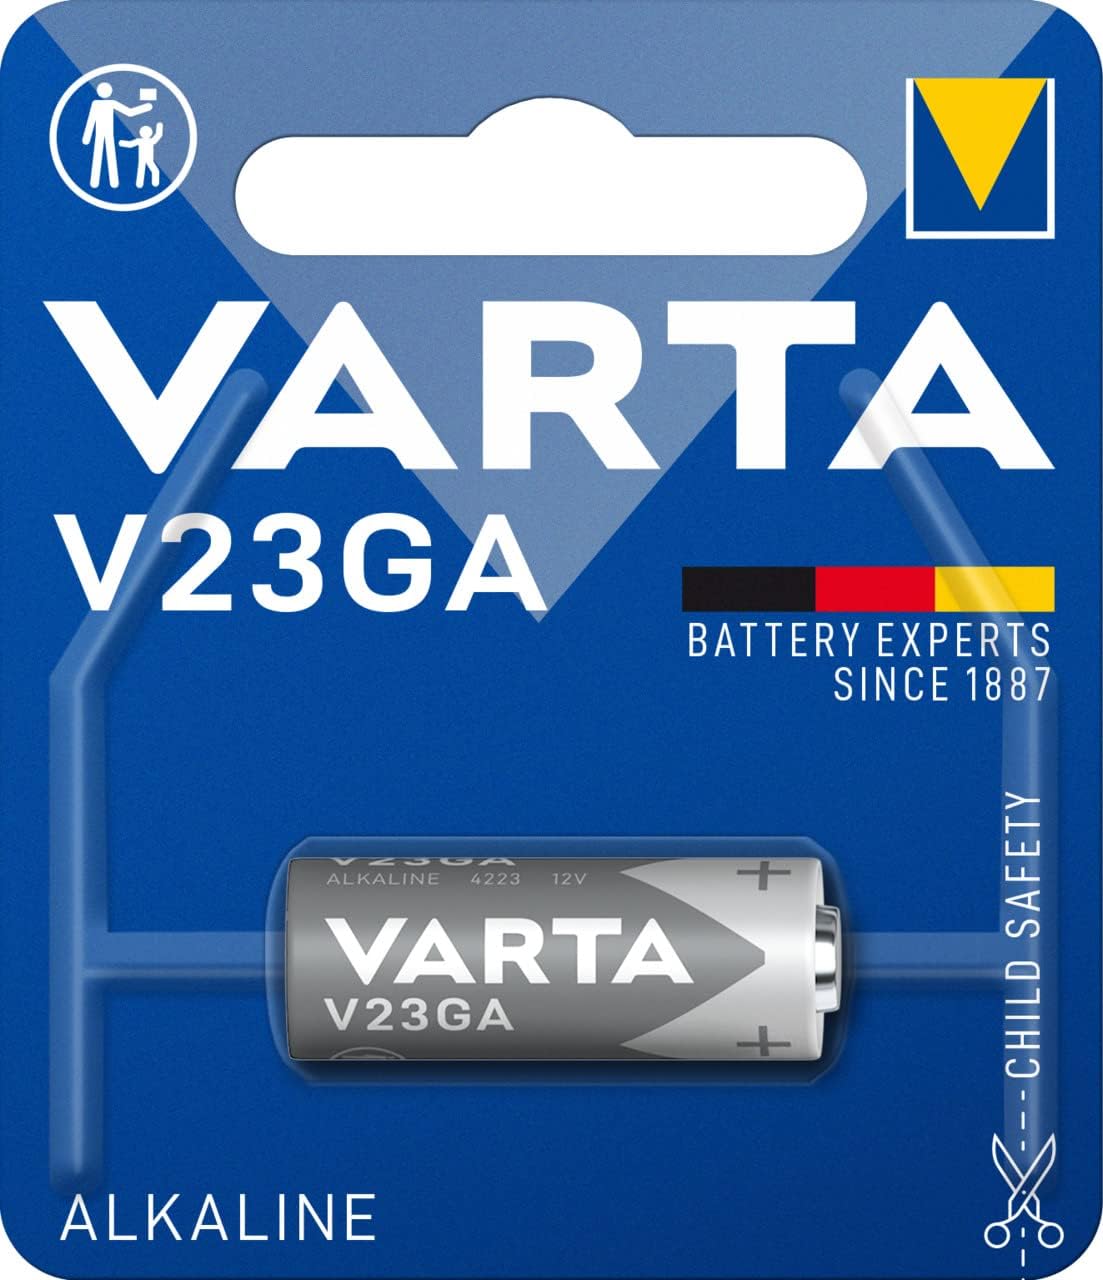 باتری ریموتی آلکالاین وارتا V23GA/8LR932 ب